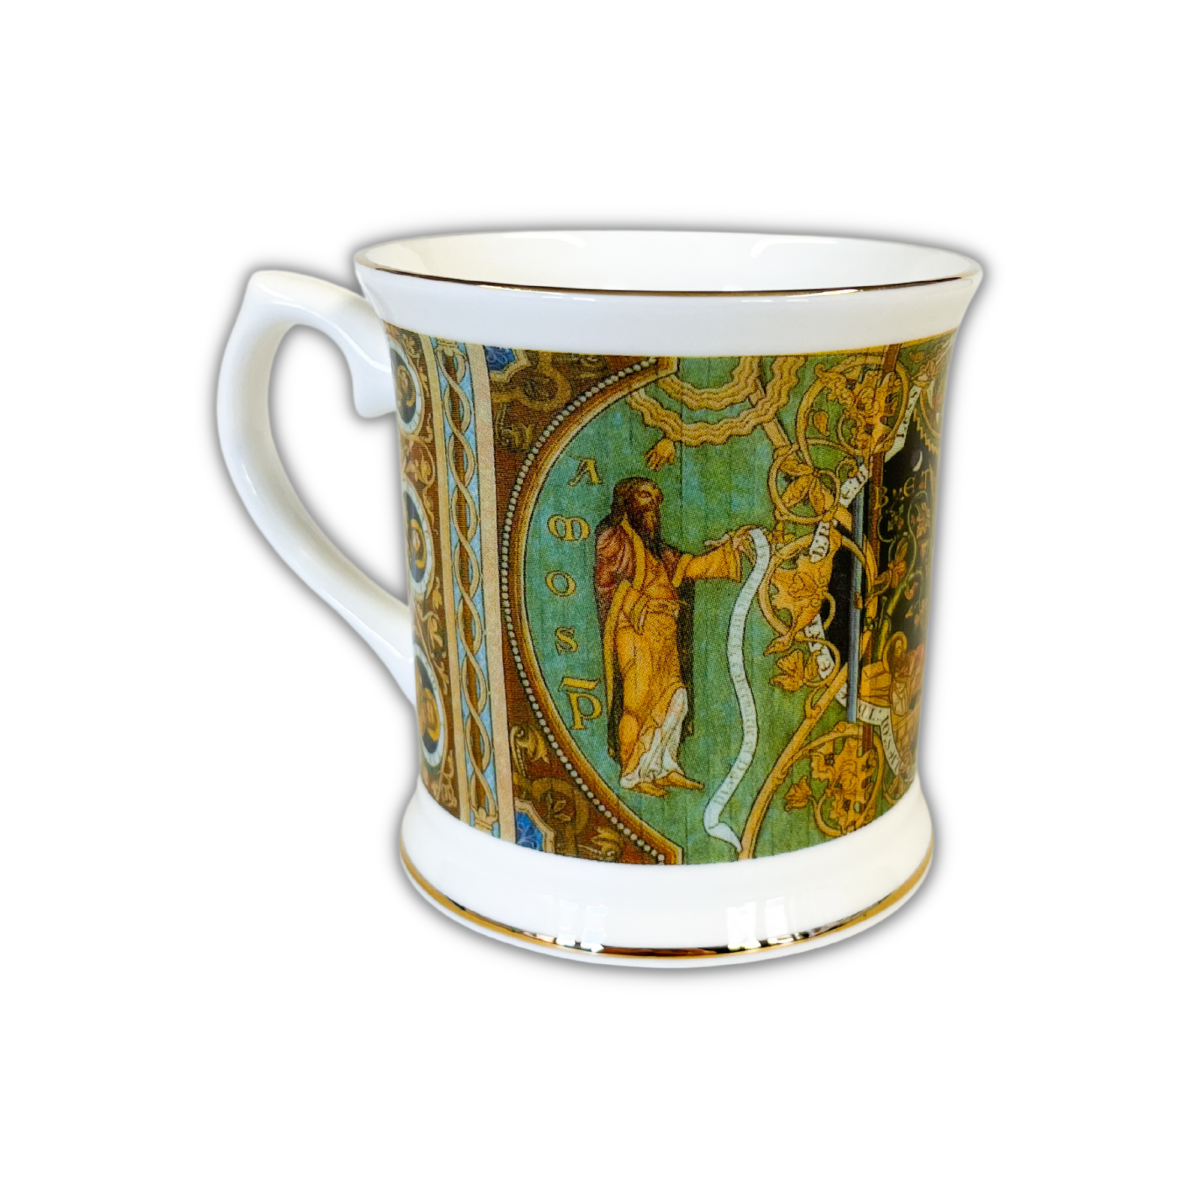 Image of Ely Cathedral Fine Bone China Mug